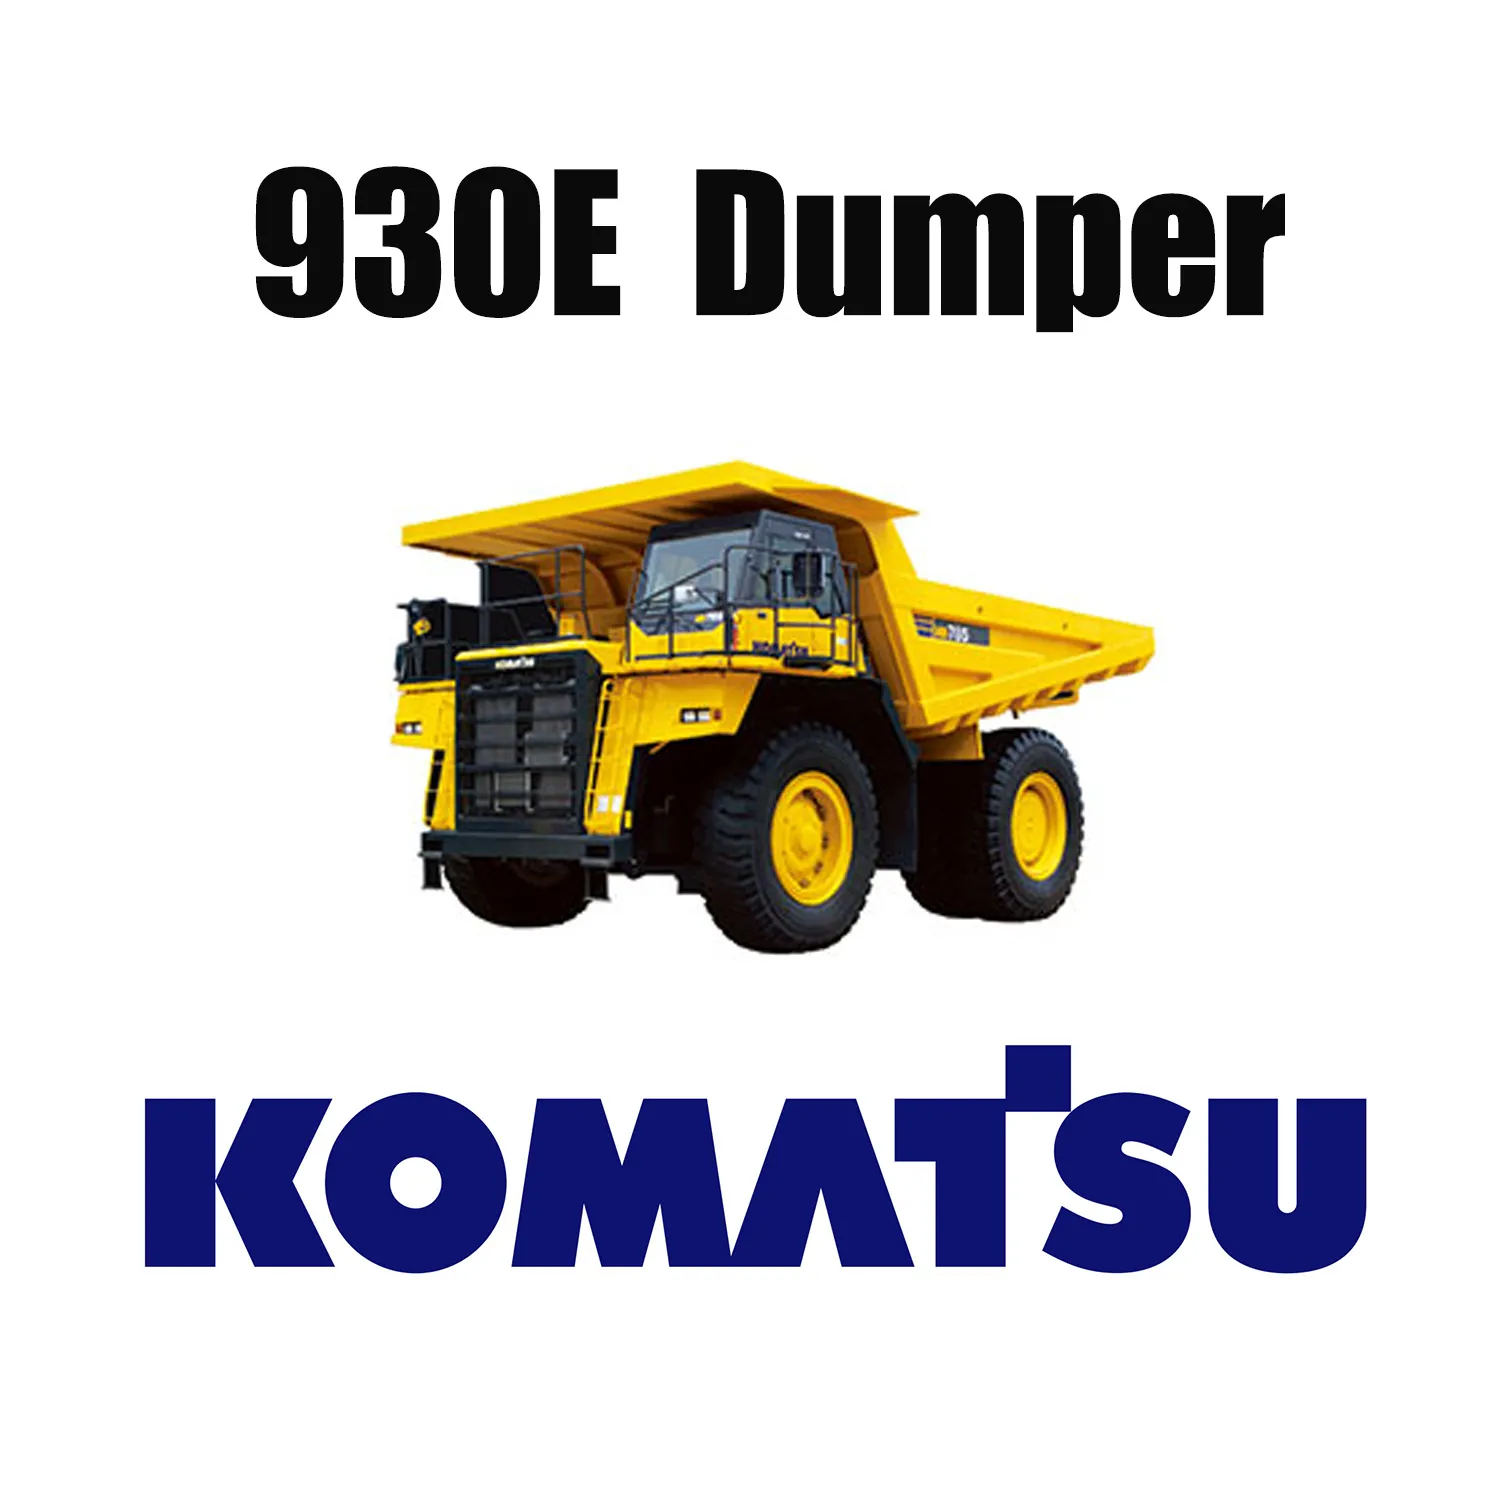 53/80R63 KOMATSU 930E için Uygulanan Yol Yüzey Madenciliği Lastikleri